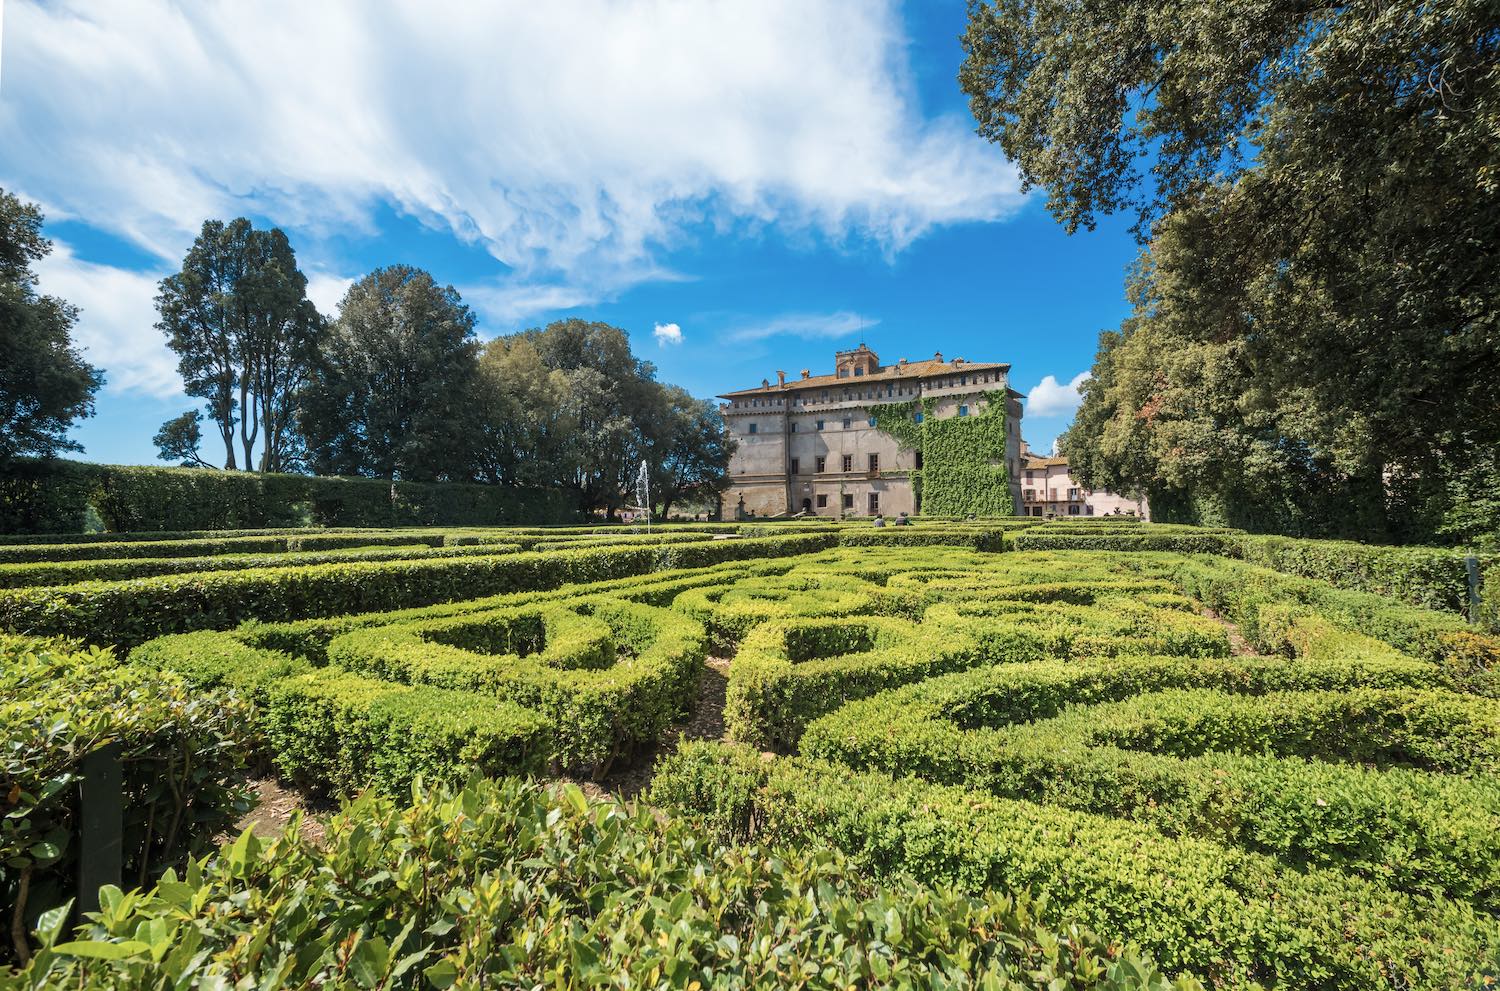 The Ruspoli Castle with parterre garden